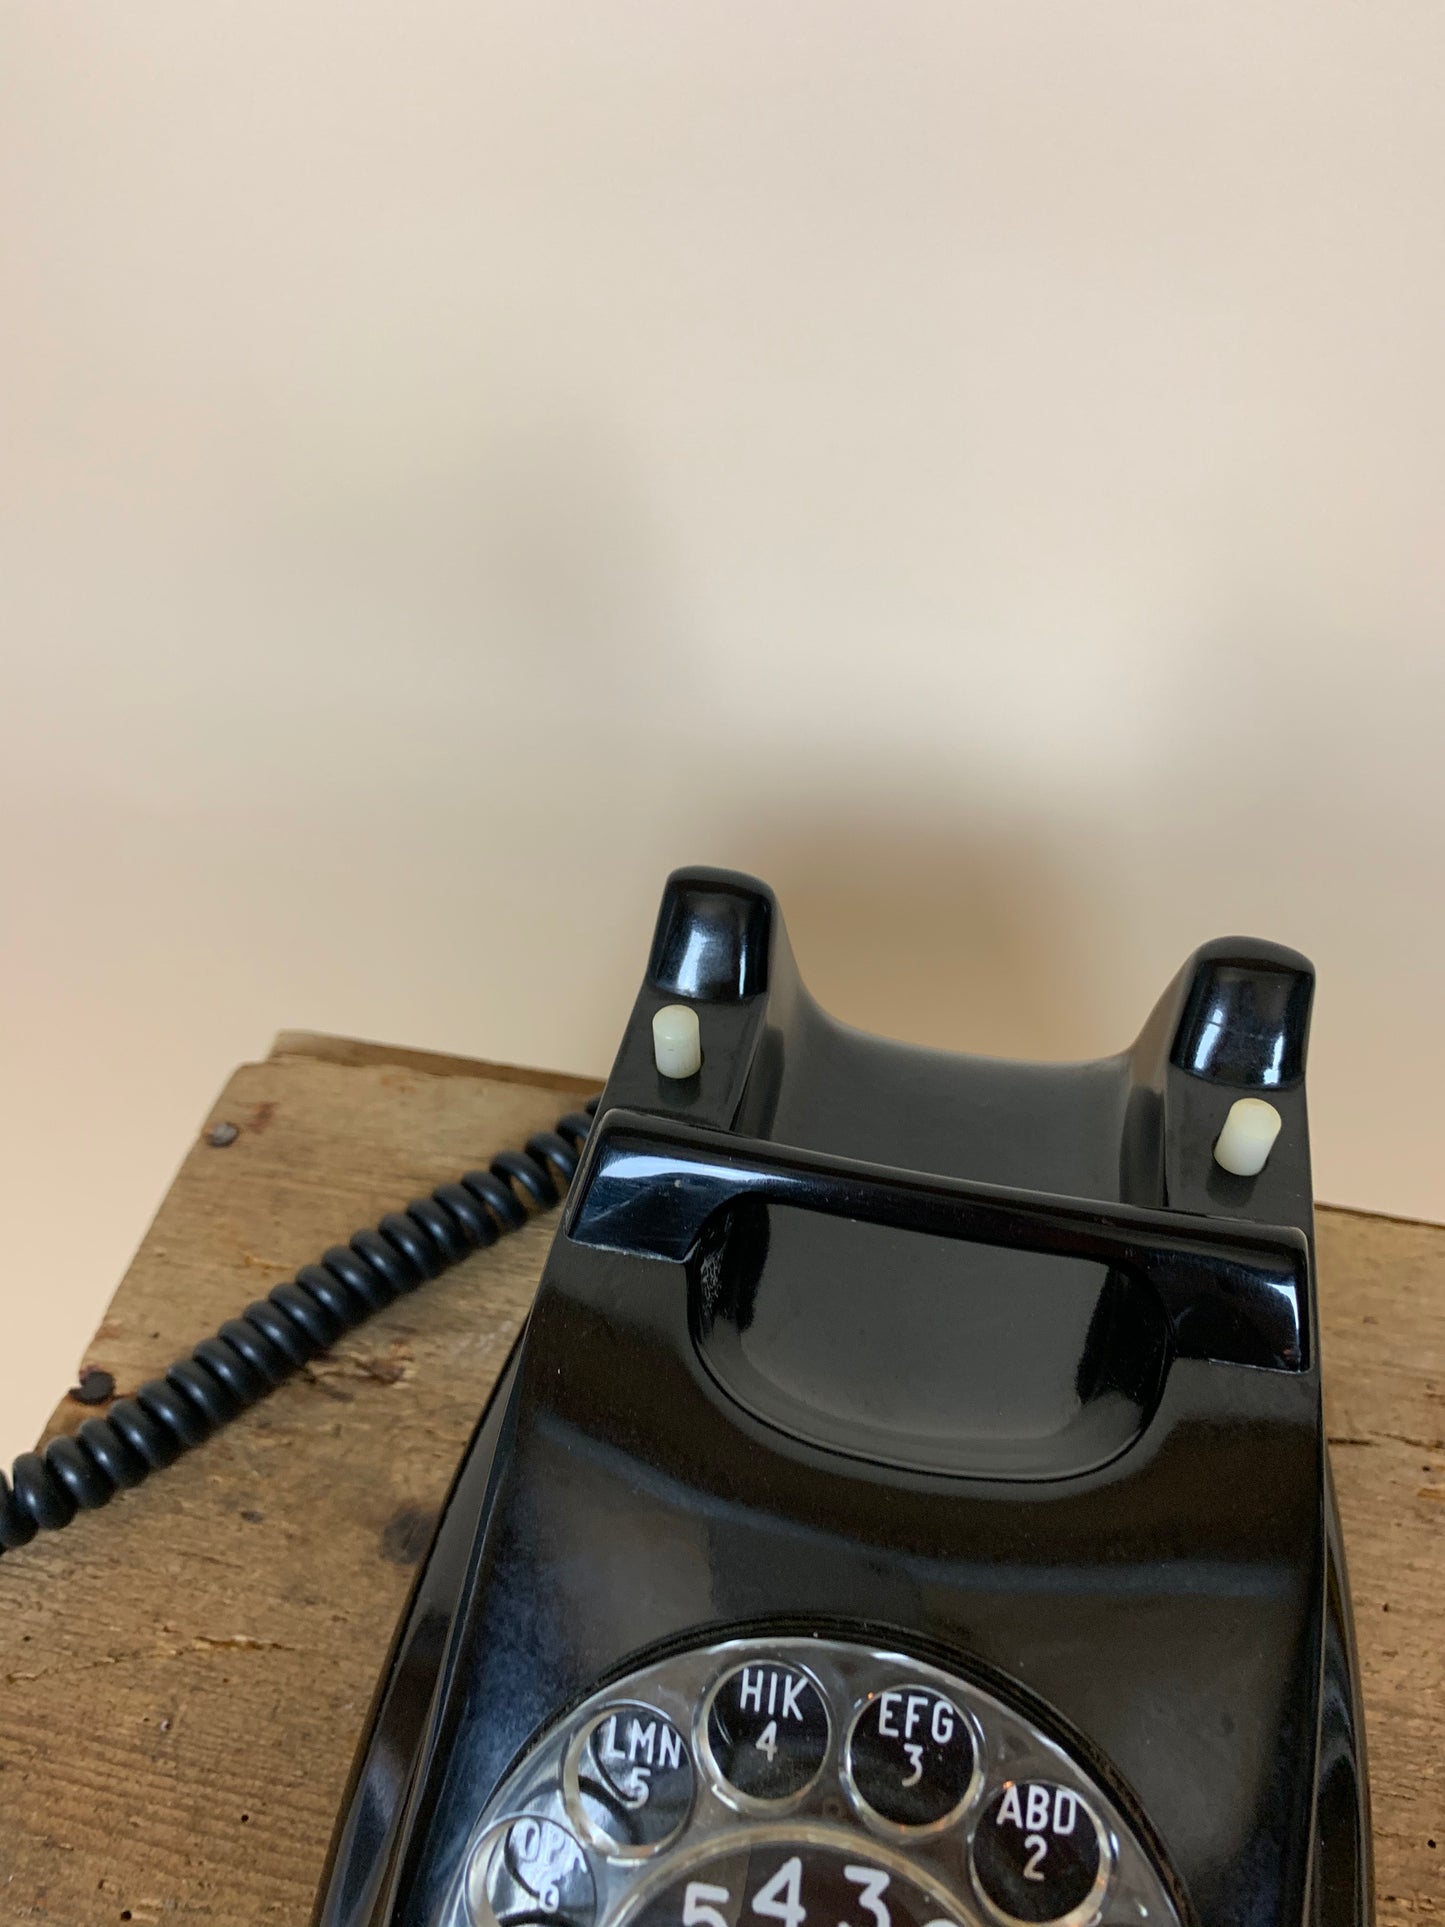 Sort bakelit telefon